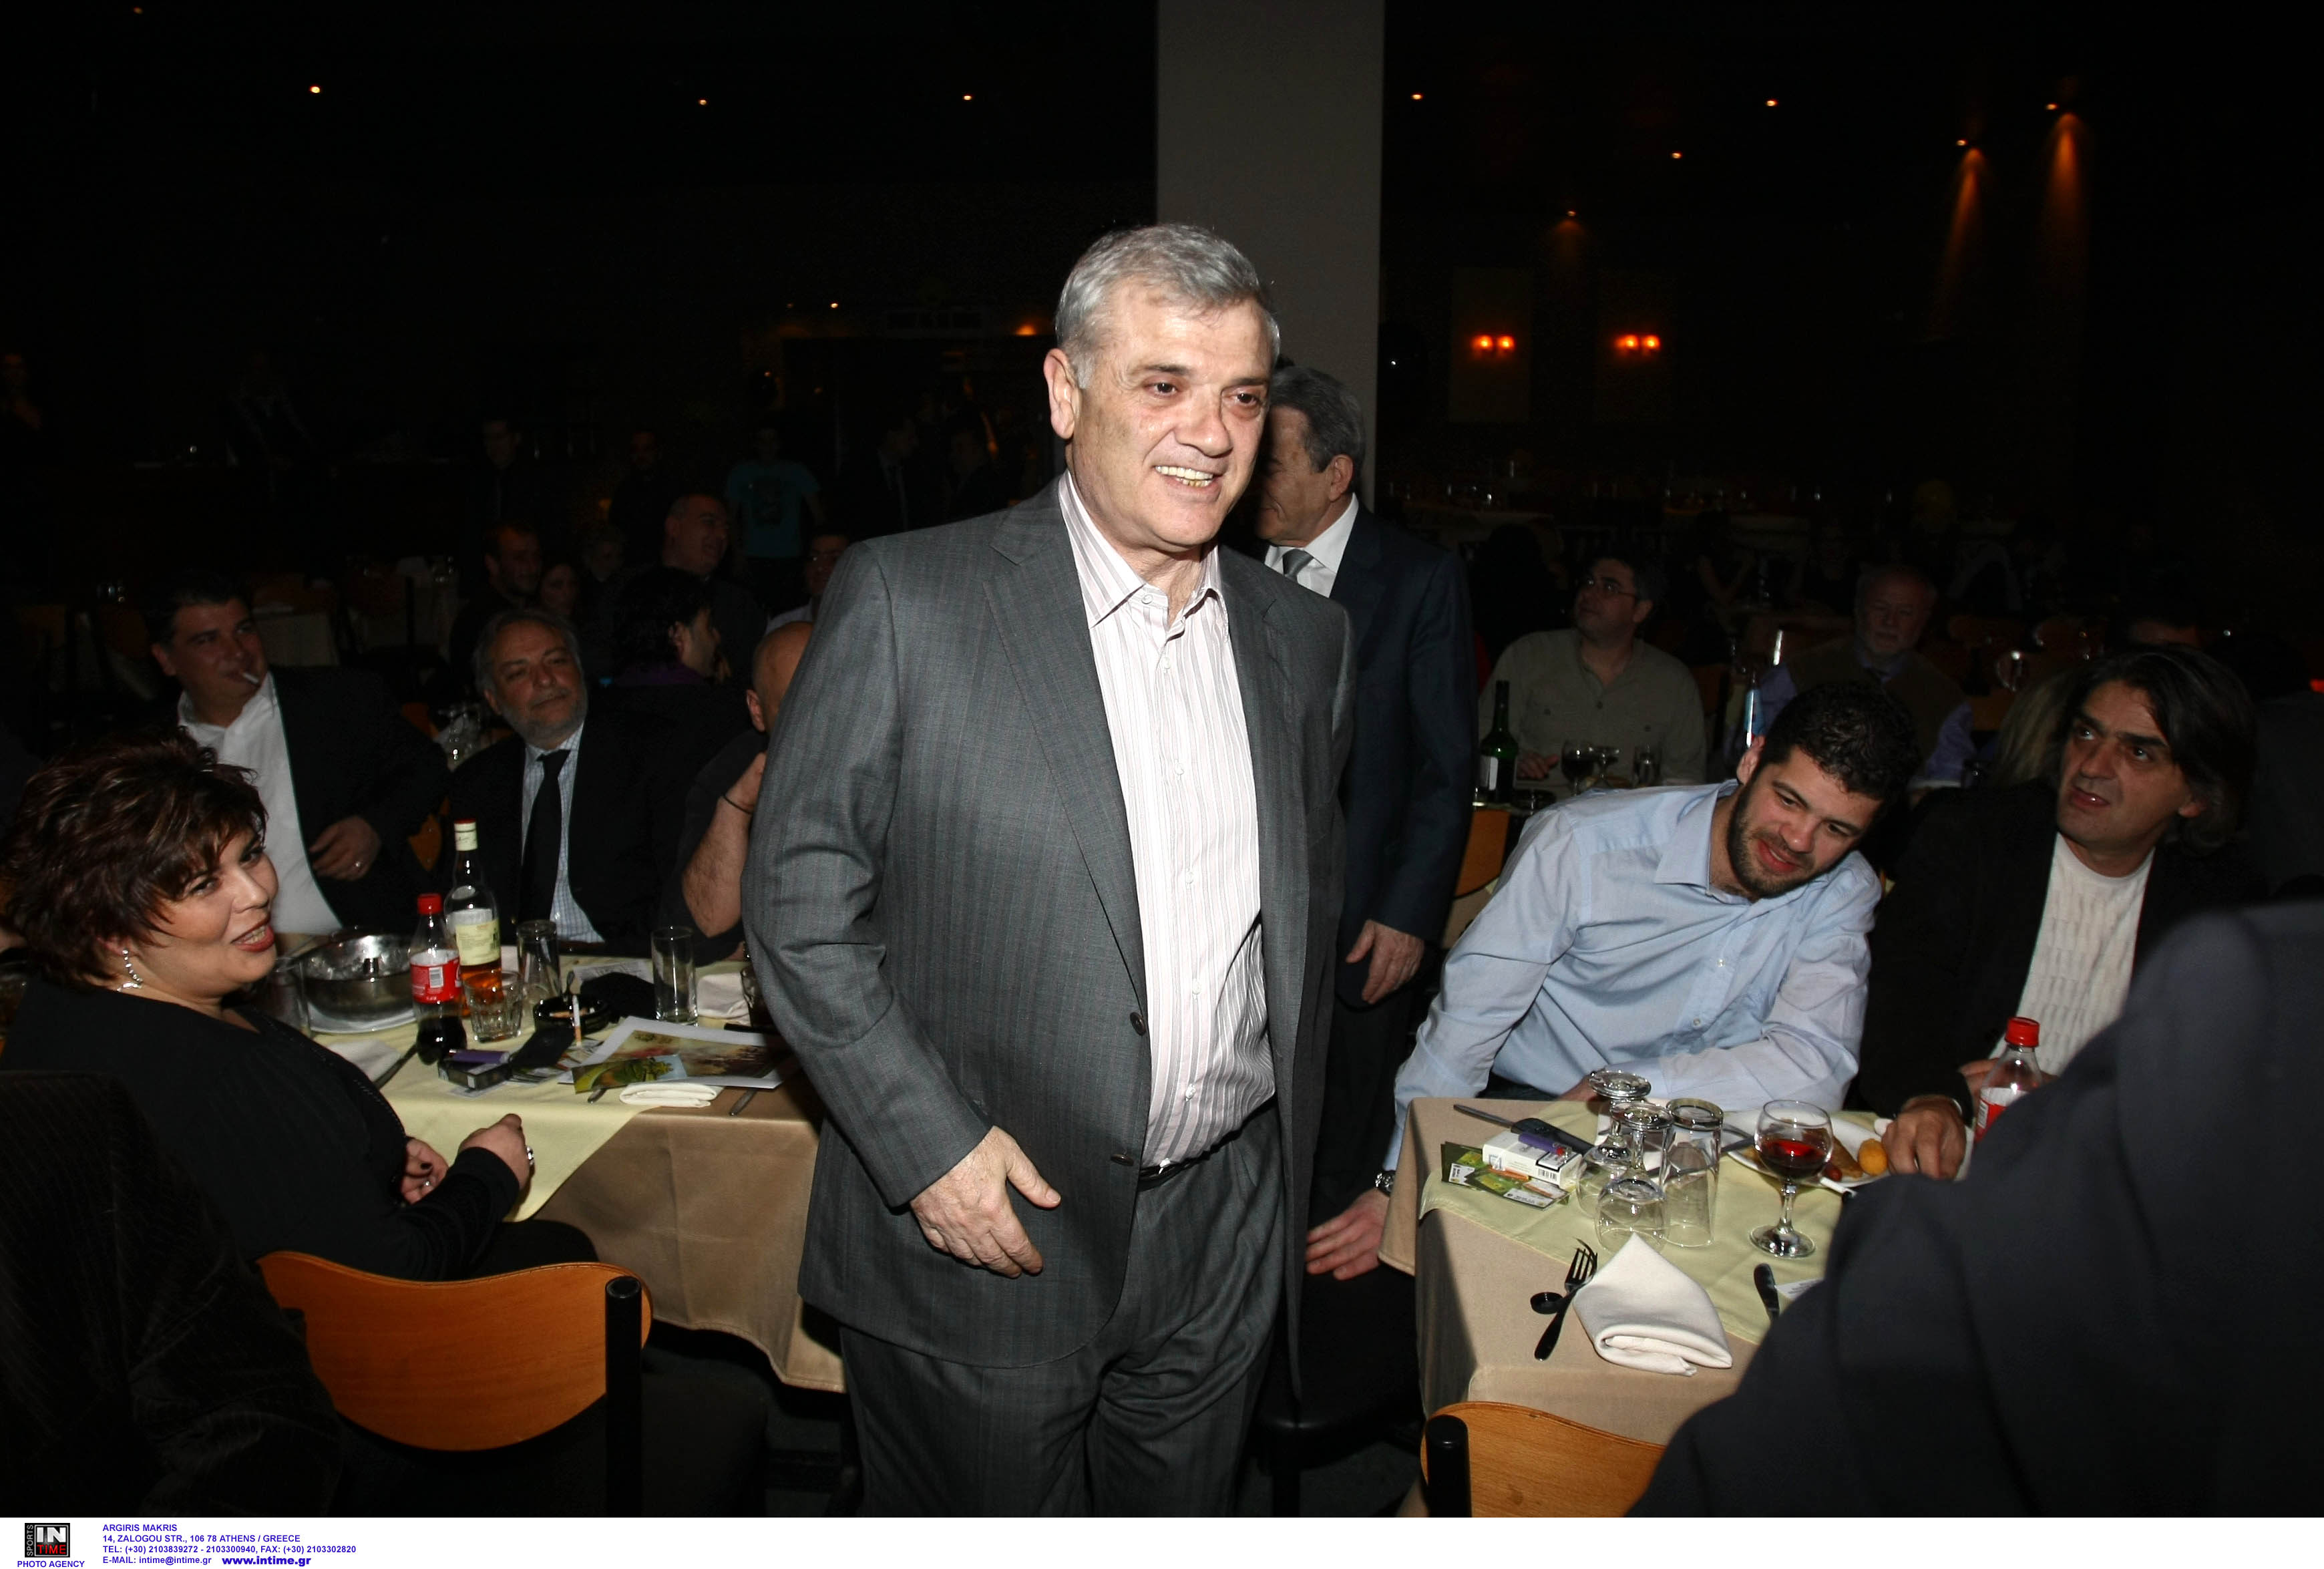 ΑΕΚ: Ο Μελισσανίδης θα περιμένει την απόφαση των μετόχων